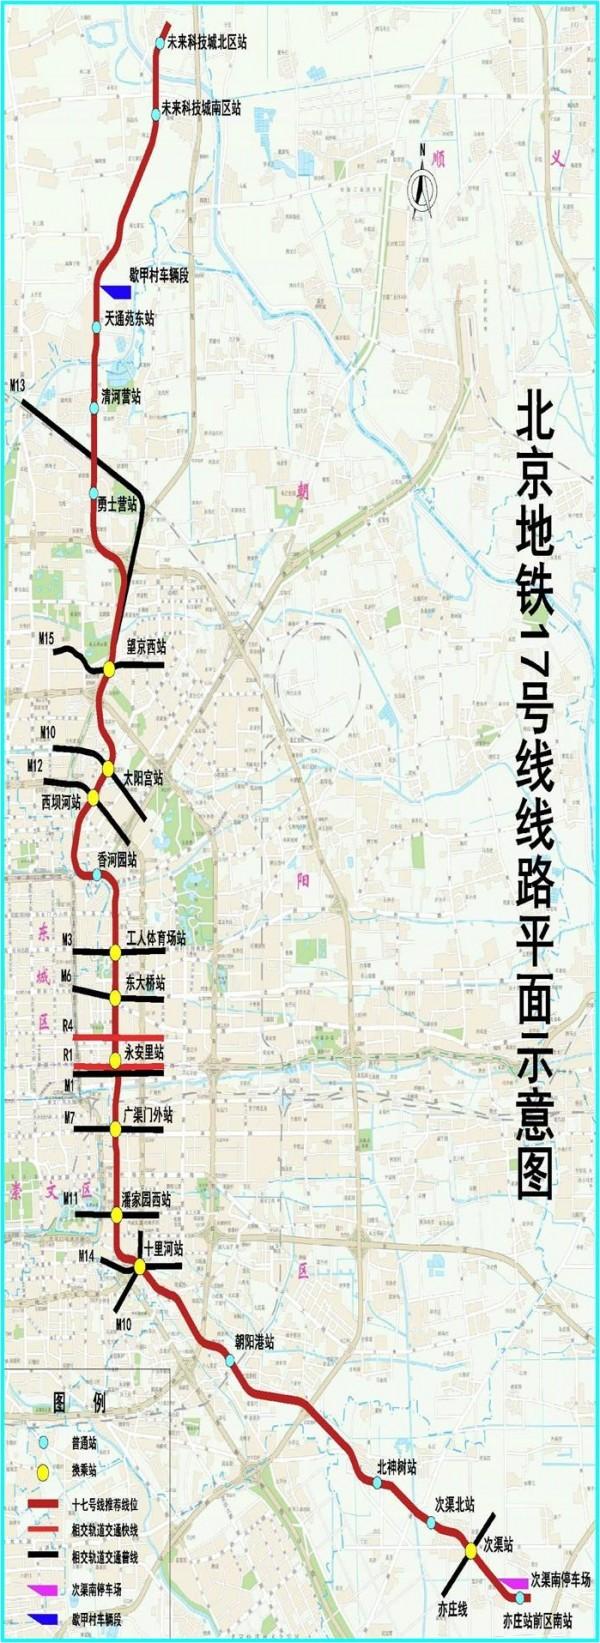 北京地铁17号线预计2020年部分开通 19站已施工_大燕网北京站_腾讯网